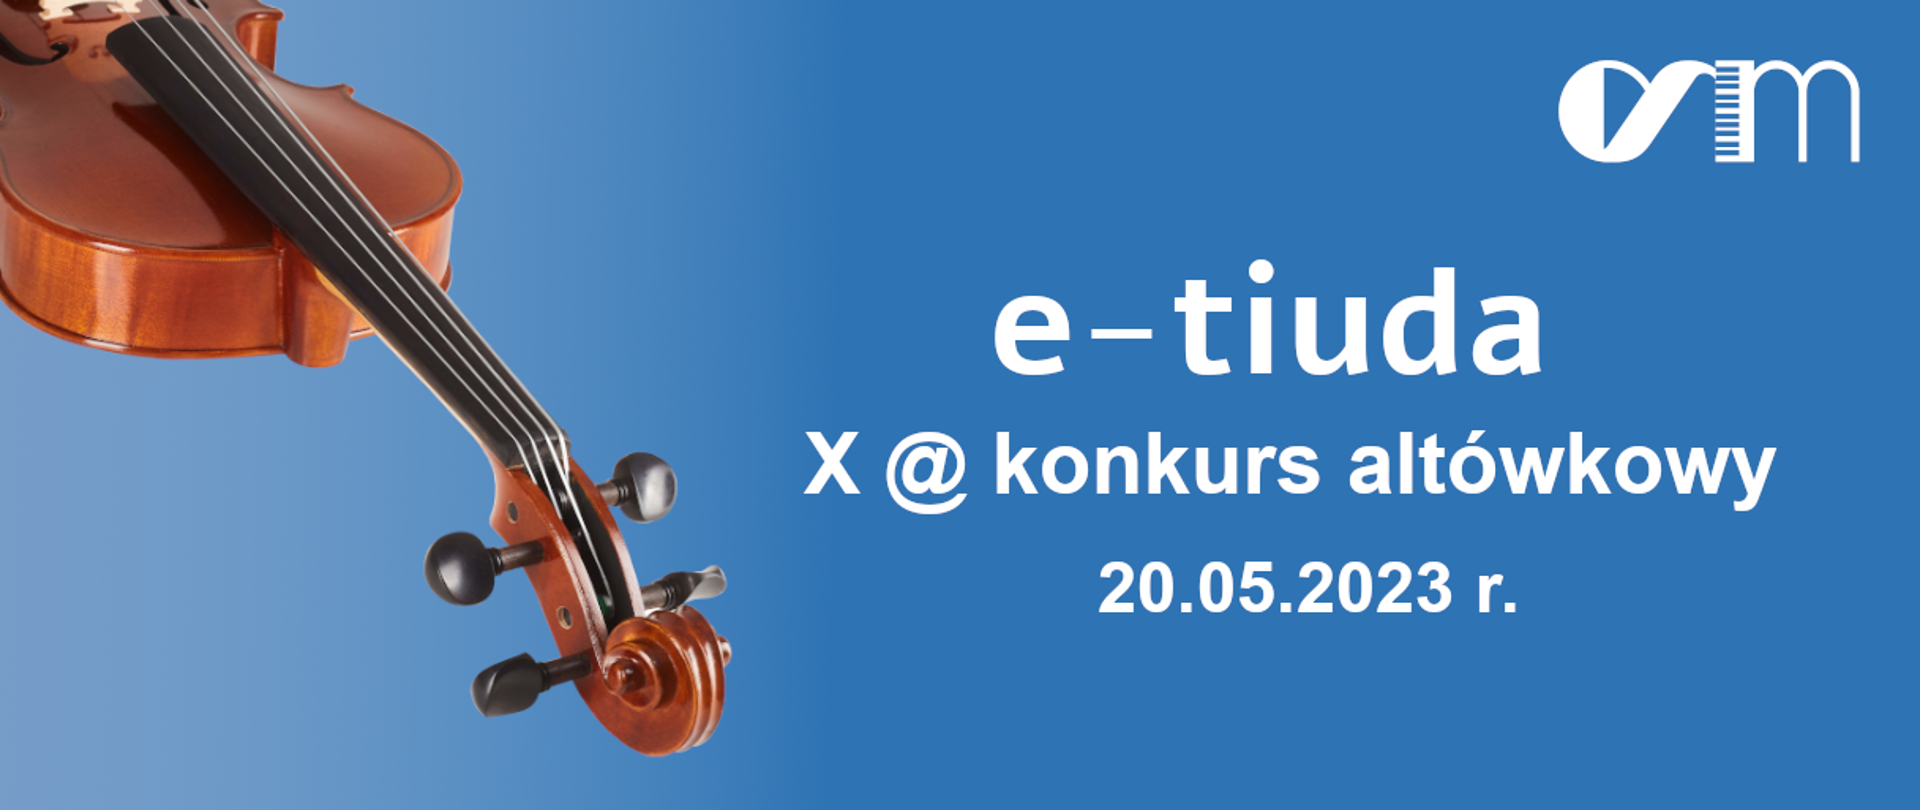 Na niebieskim tle po lewej stornie zdjęcie skrzypiec, po prawej napis e-tiuda X konkurs altówkowy 20.05.2023 r.